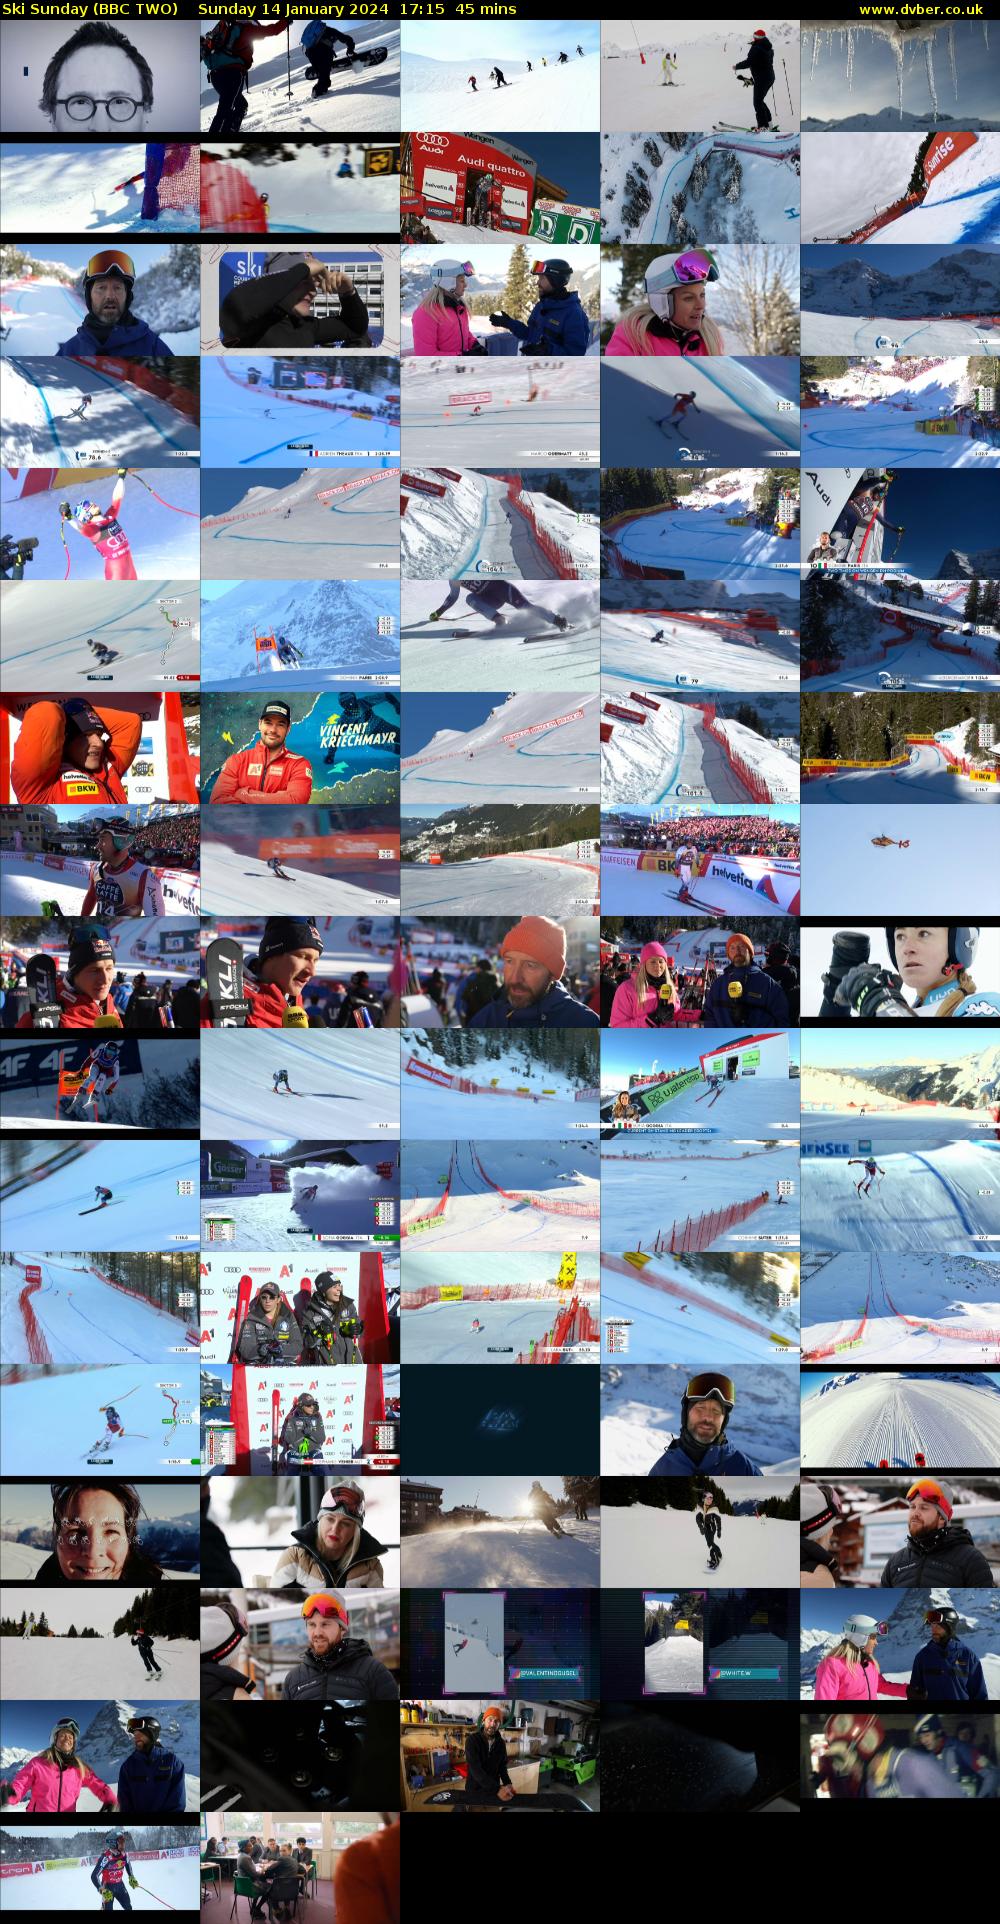 Ski Sunday (BBC TWO) Sunday 14 January 2024 17:15 - 18:00